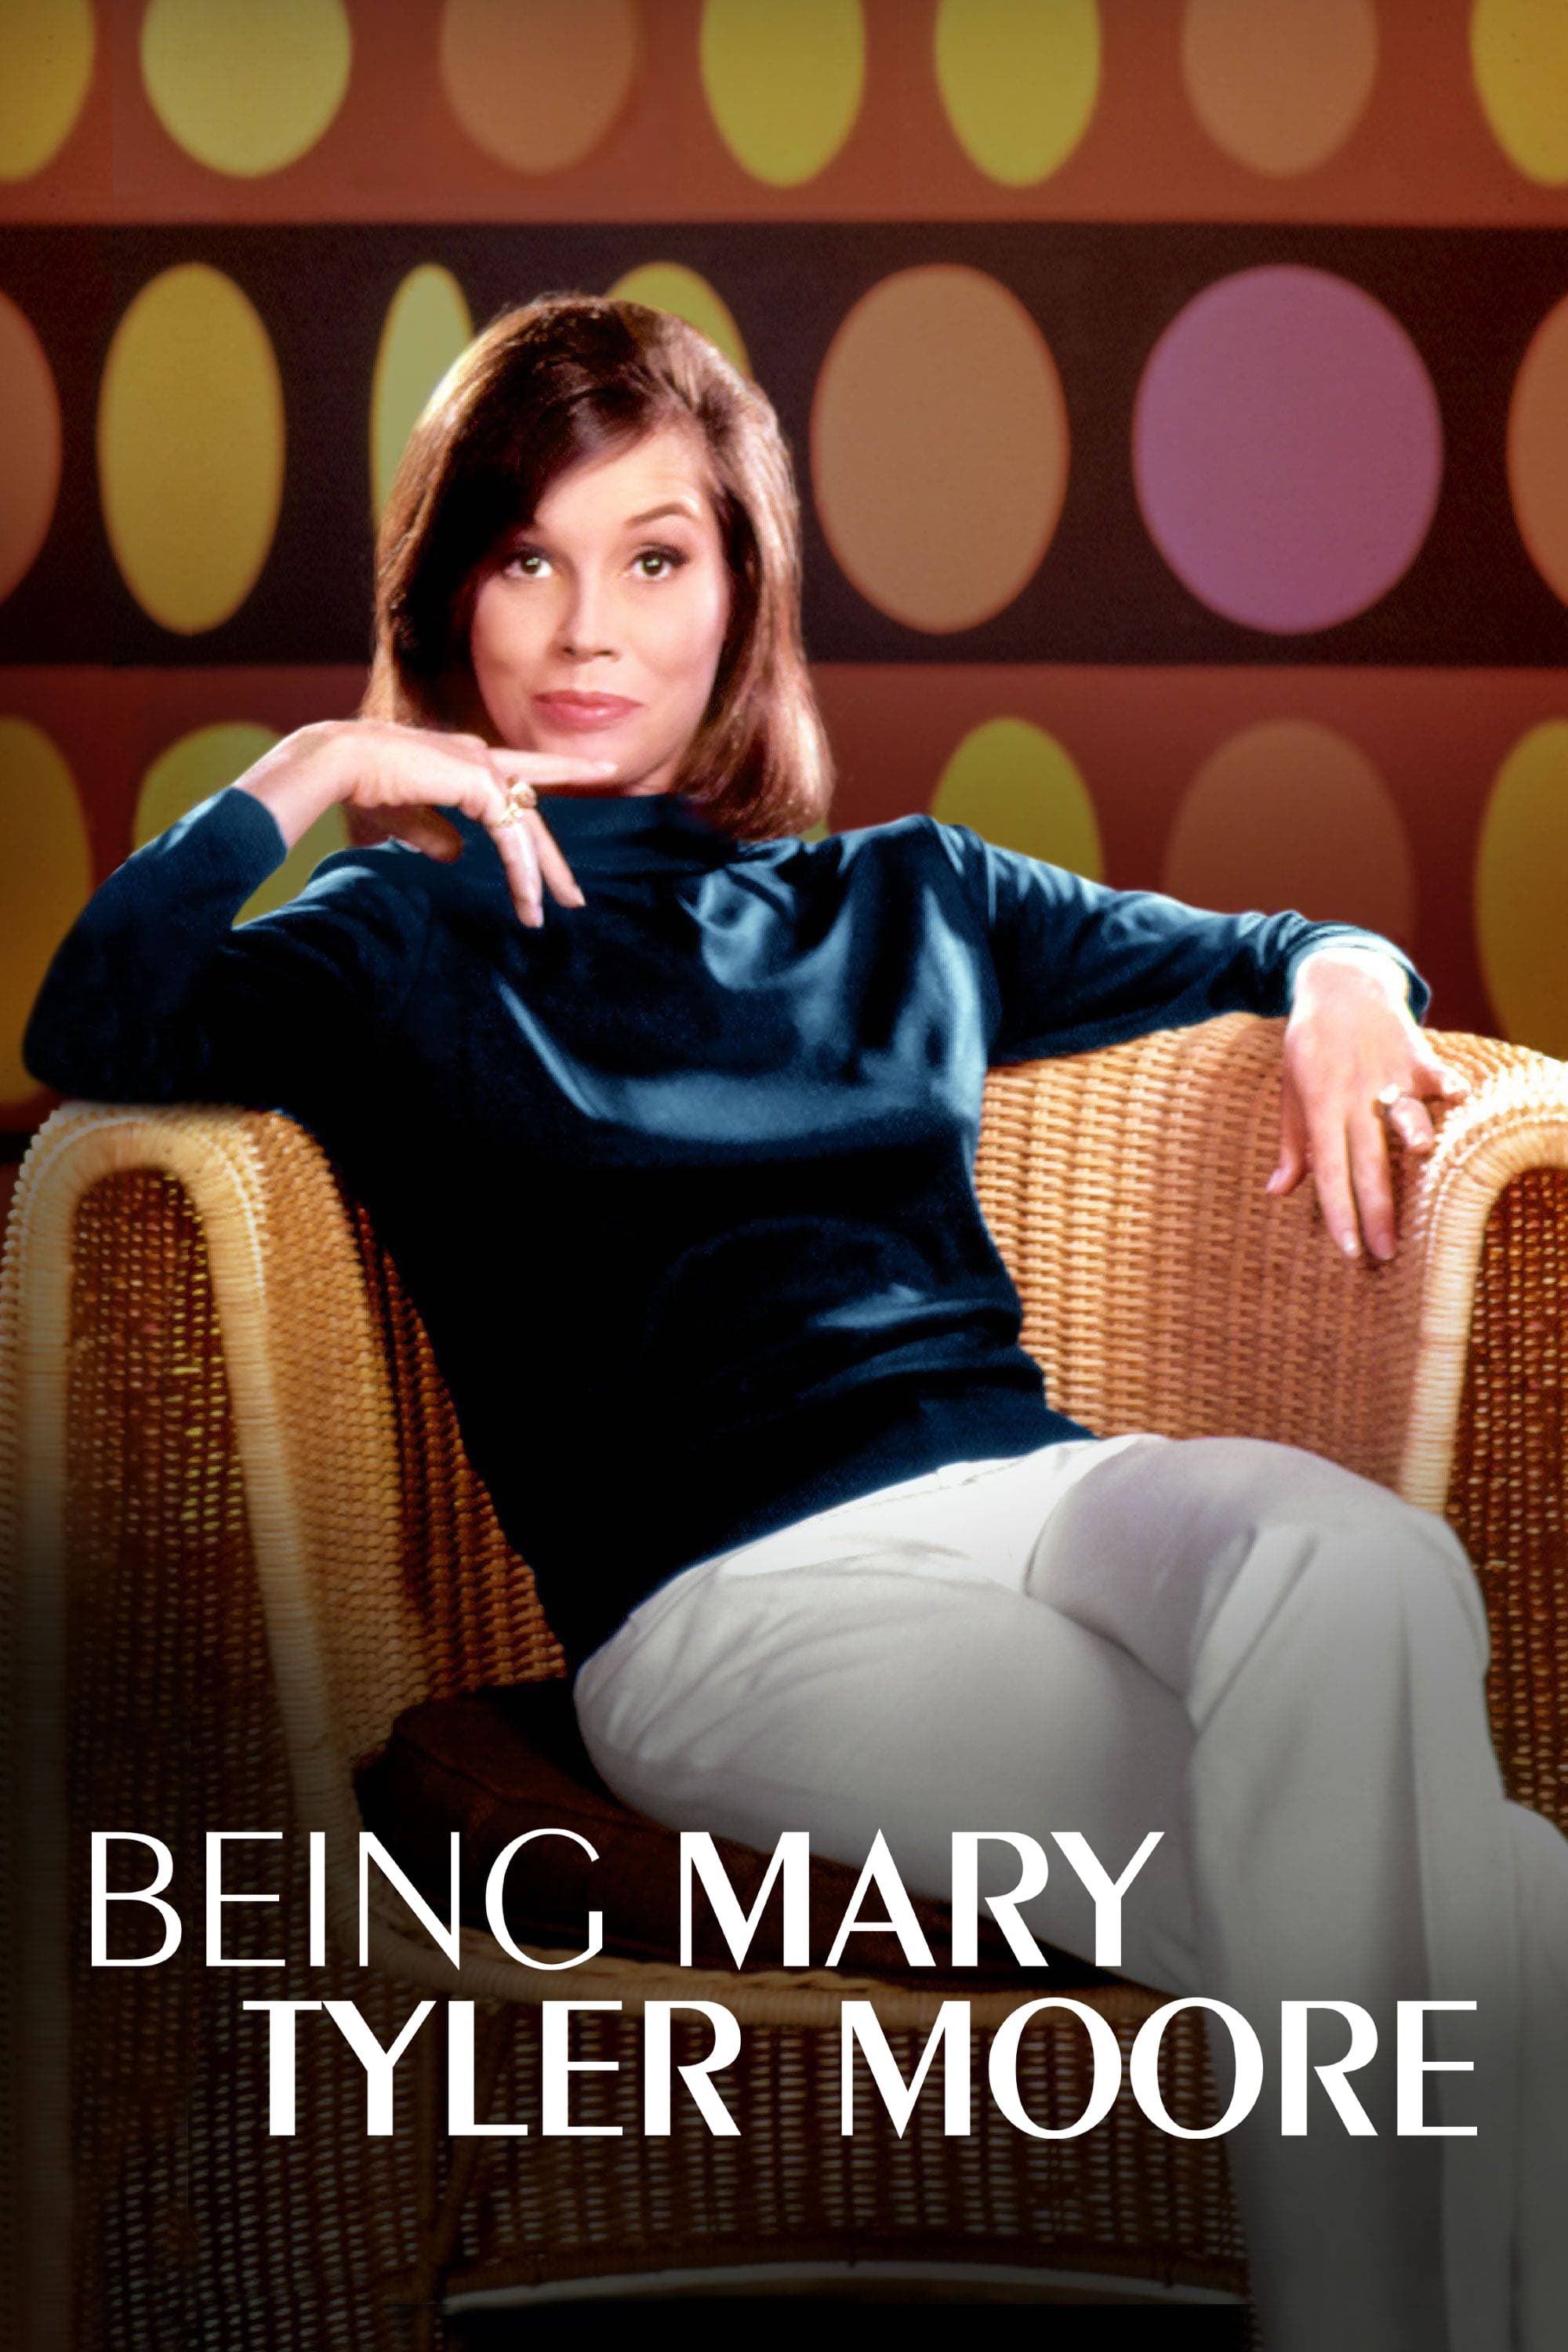 Caratula de Being Mary Tyler Moore (Mary Tyler Moore: La chica de la tele) 